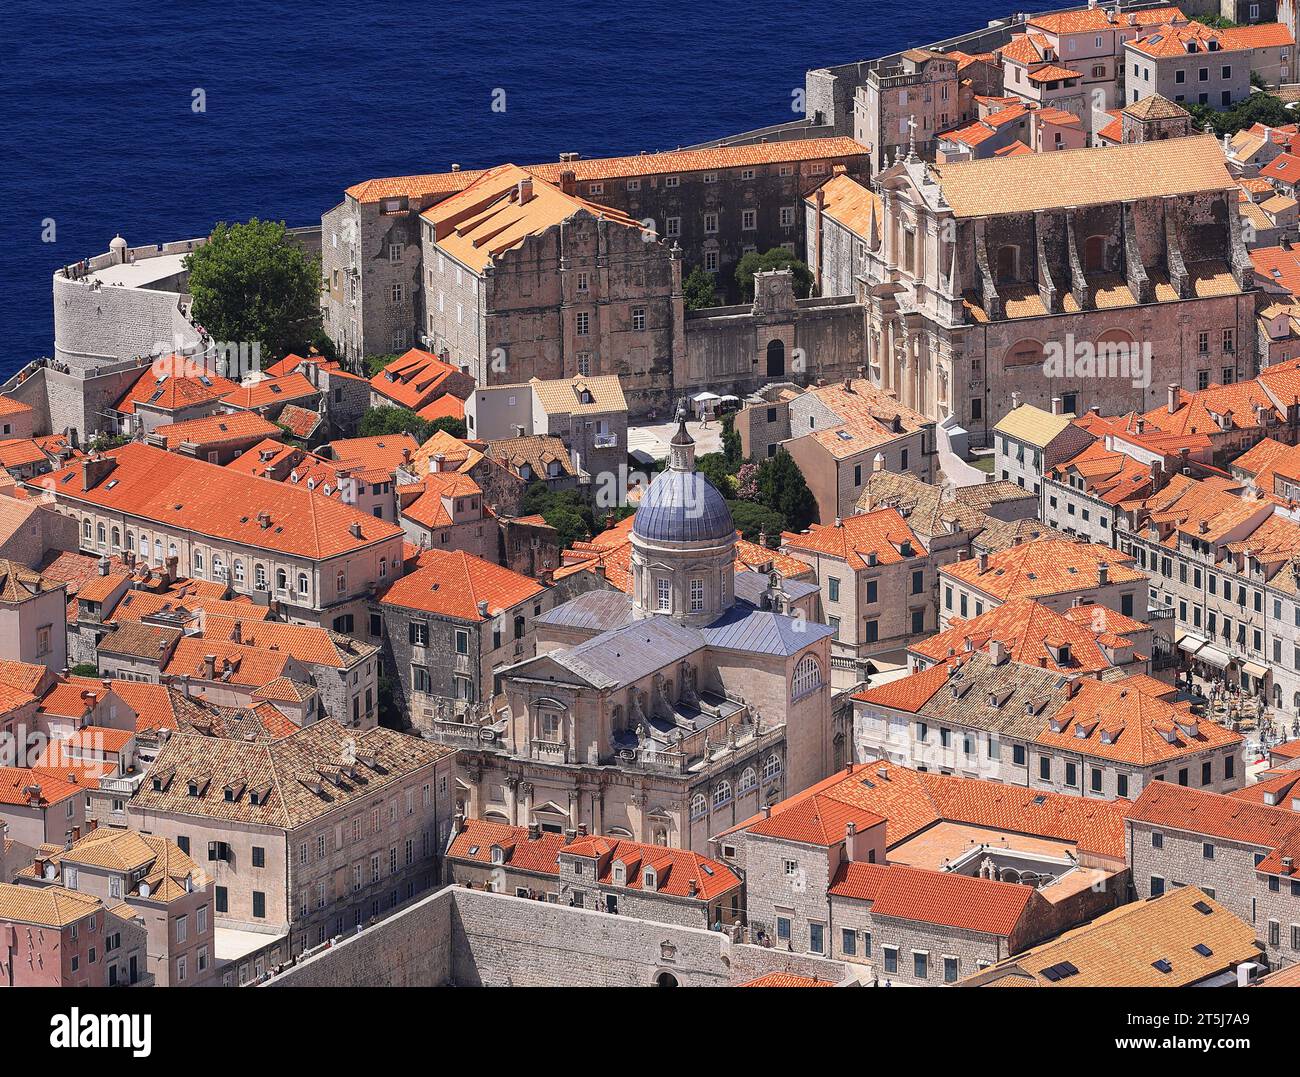 Vue panoramique aérienne de détail de la vieille ville de Dubrovnik sur la côte de la mer Adriatique, Croatie, Europe Banque D'Images